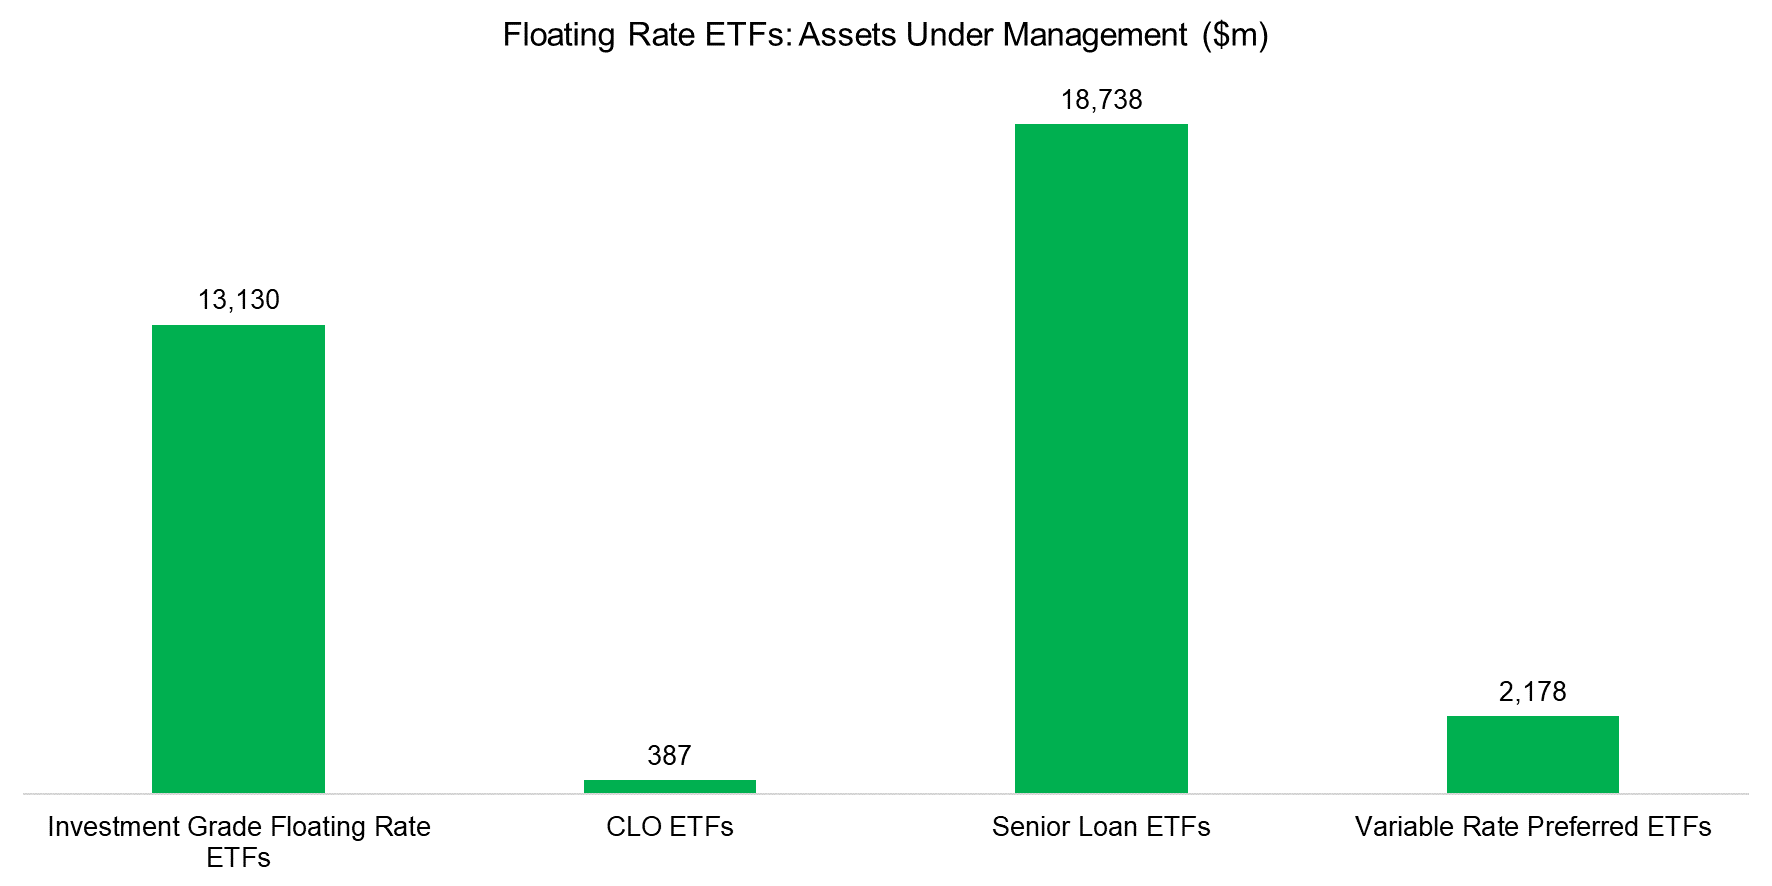 Floating Rate ETFs Assets Under Management ($m)